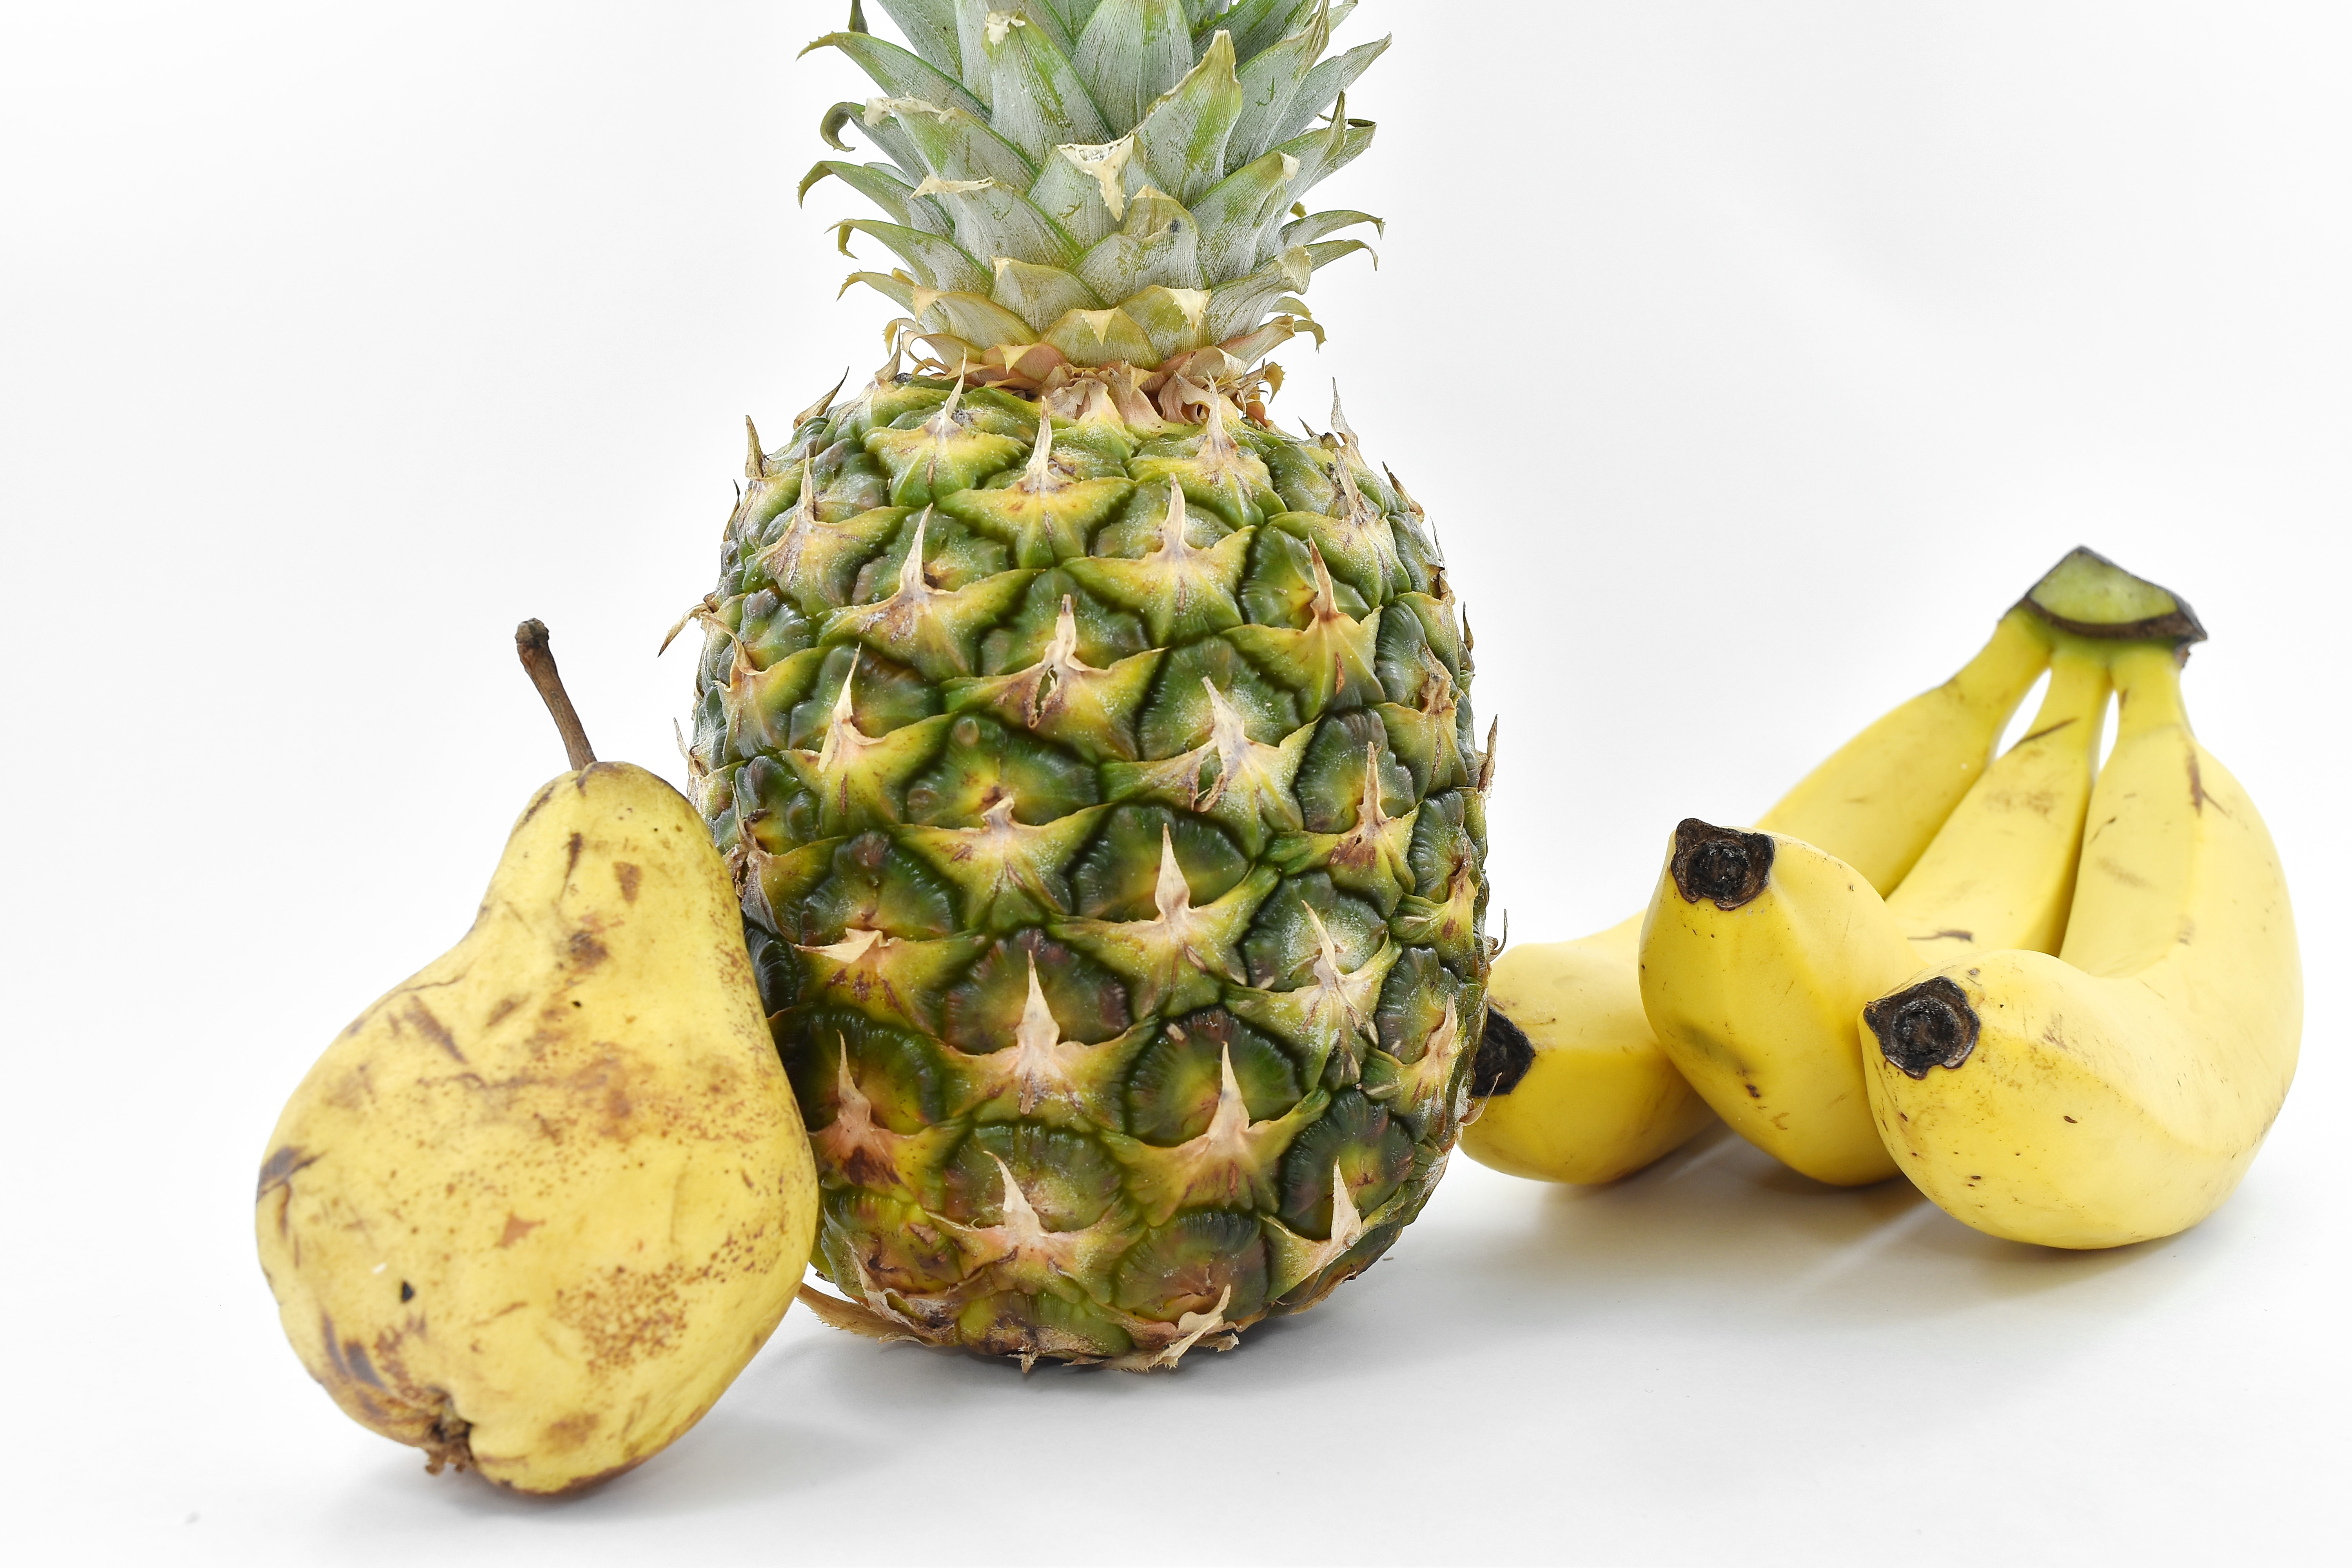 Kostenlose Bild: Banane, Birne, Ananas, Vegetarier, Essen, Obst ...